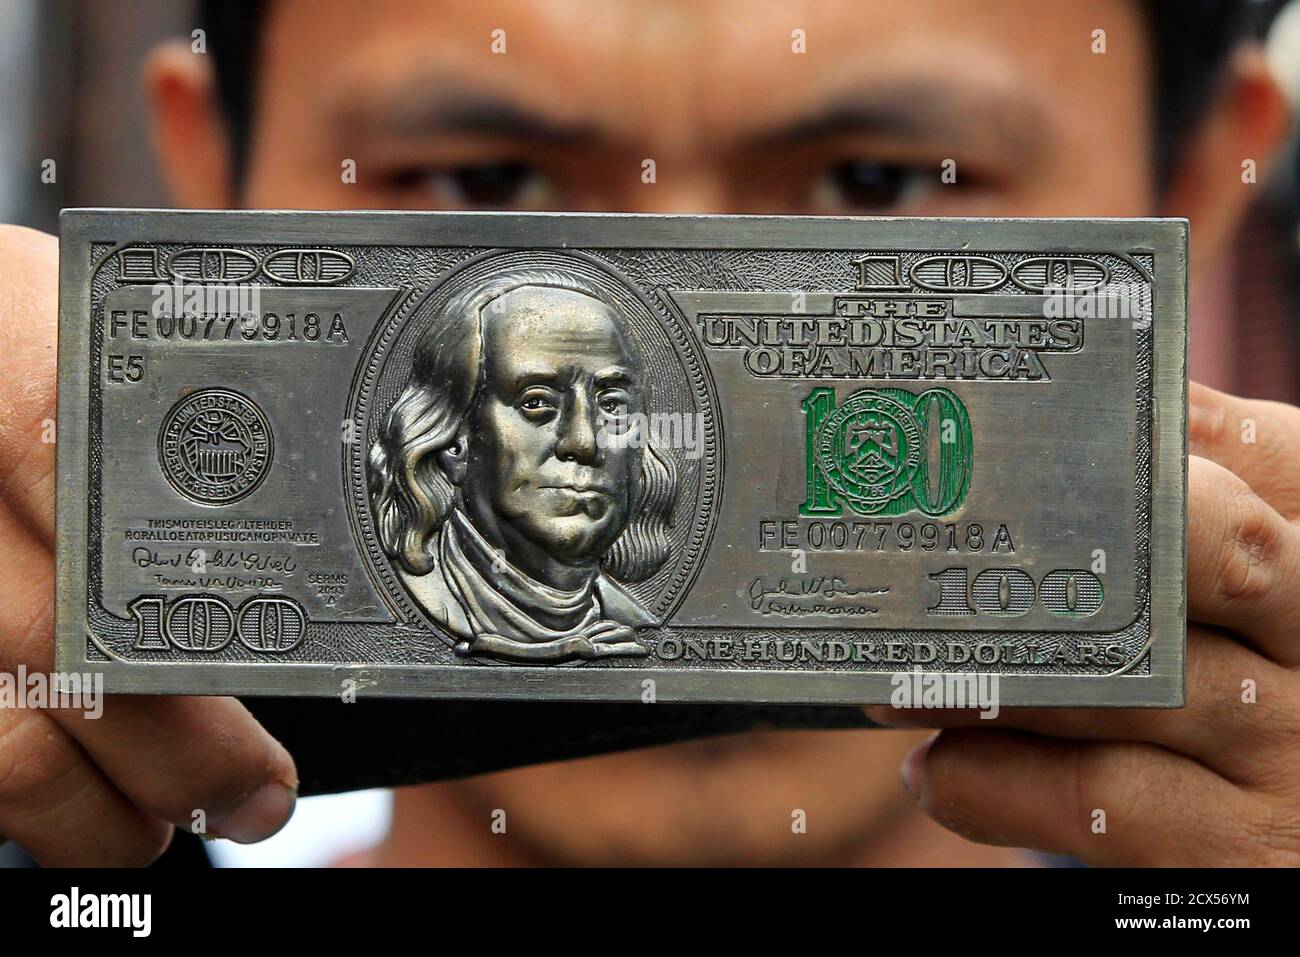 Un vendeur tient une boucle de ceinture avec des gravures de devise  américaine, qui est vendu pour 500 pesos (11 $), sur un marché à  Divisioria, le métro Manille le 23 octobre